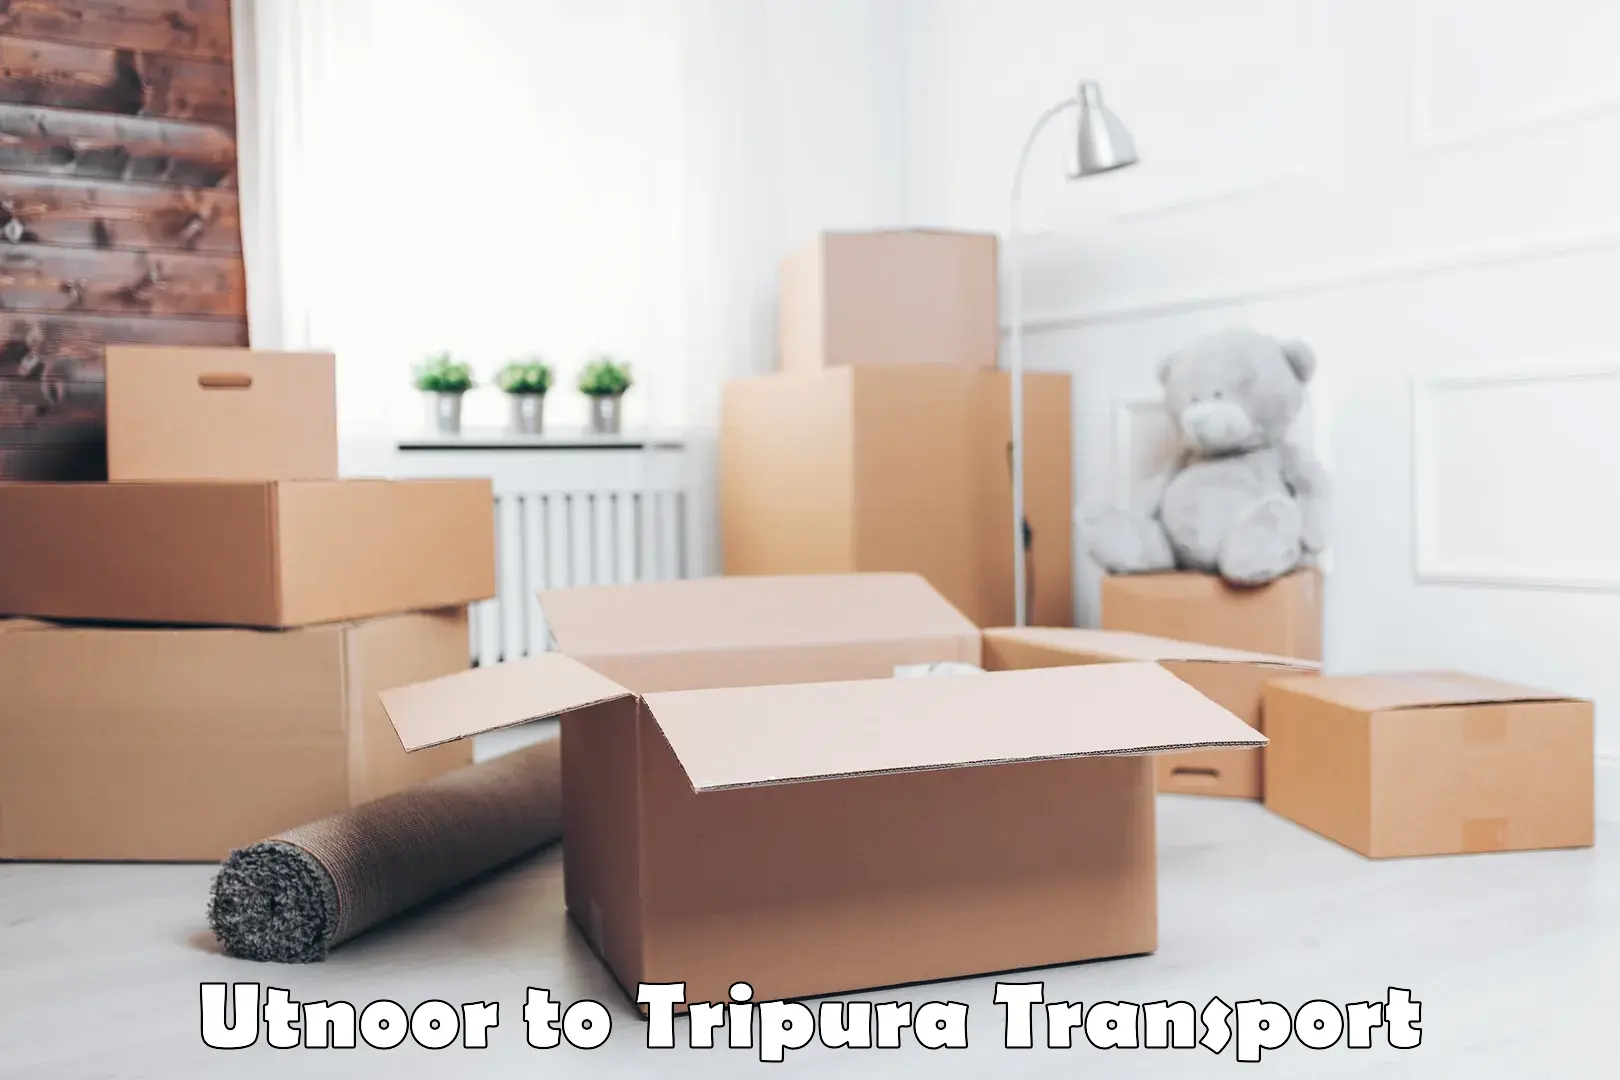 Container transport service Utnoor to Teliamura